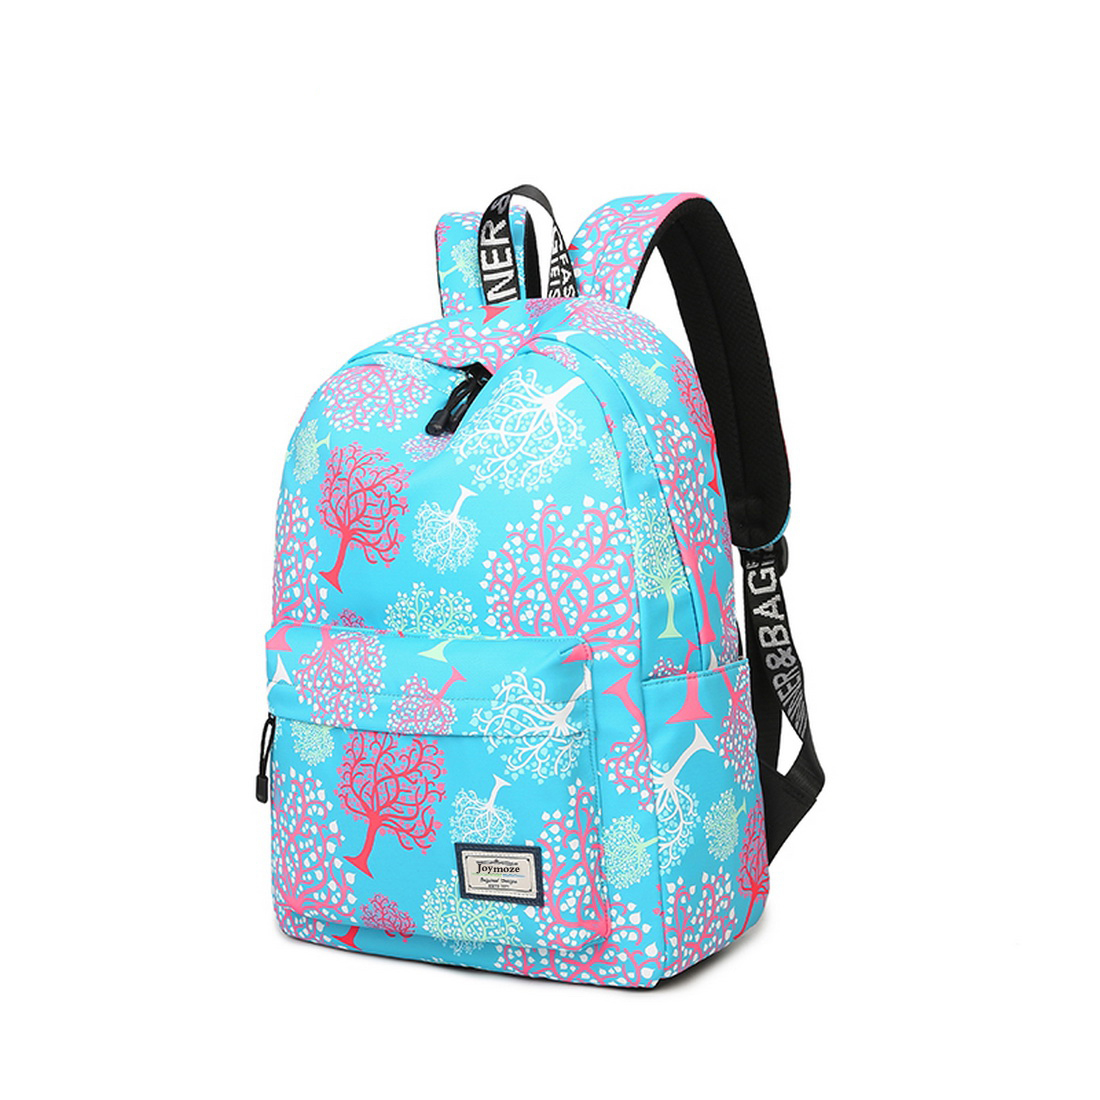 Joymoze Waterproof School Backpack for Girls Middle School Cute Bookbag Daypack for Women Tree 843